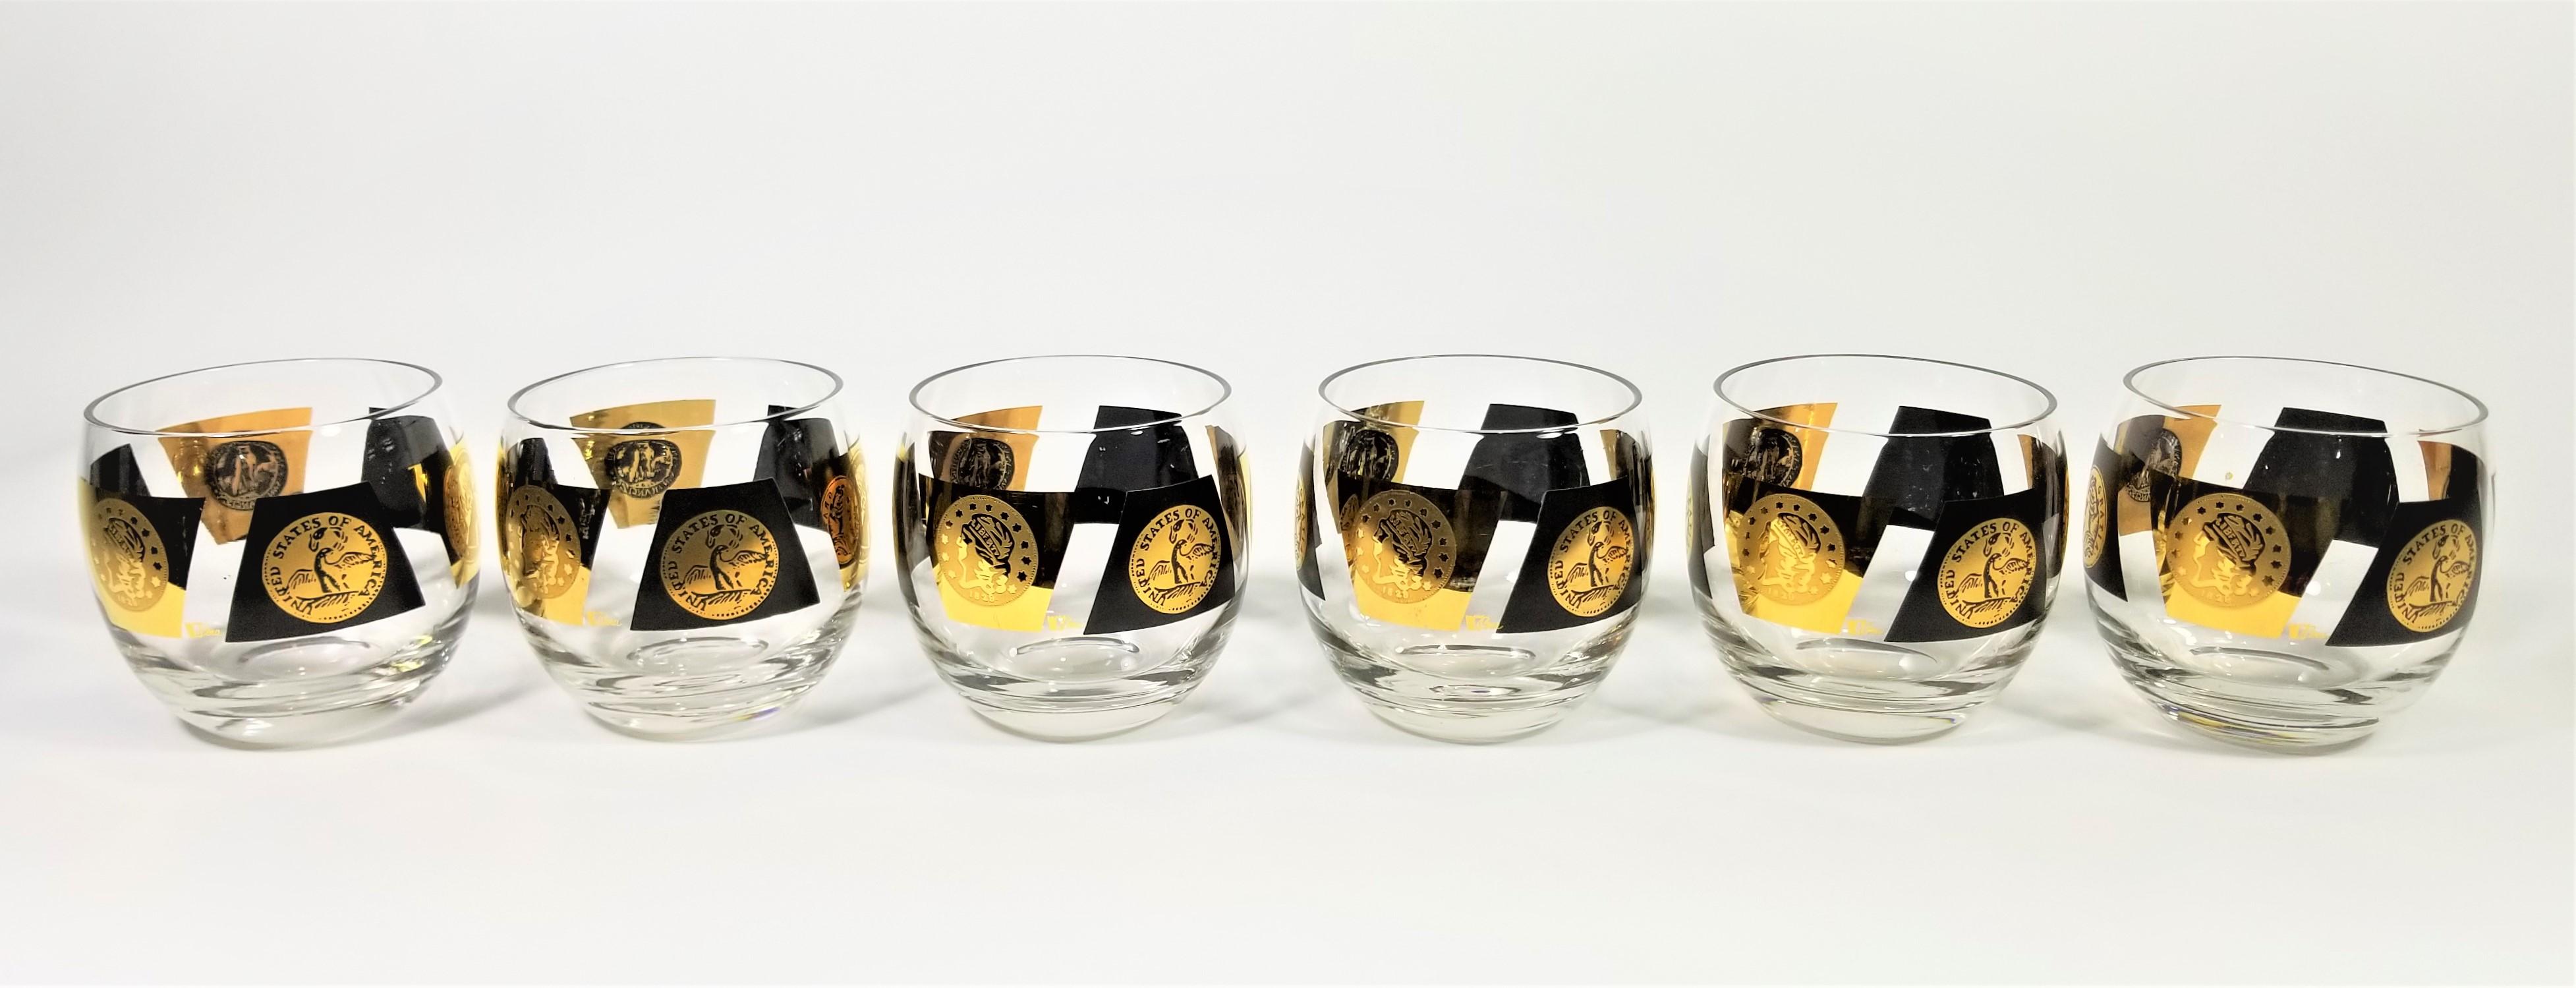 Cera 22-Karat Gold 1960s Midcentury Signed Glassware Barware Set of 6 For Sale 1